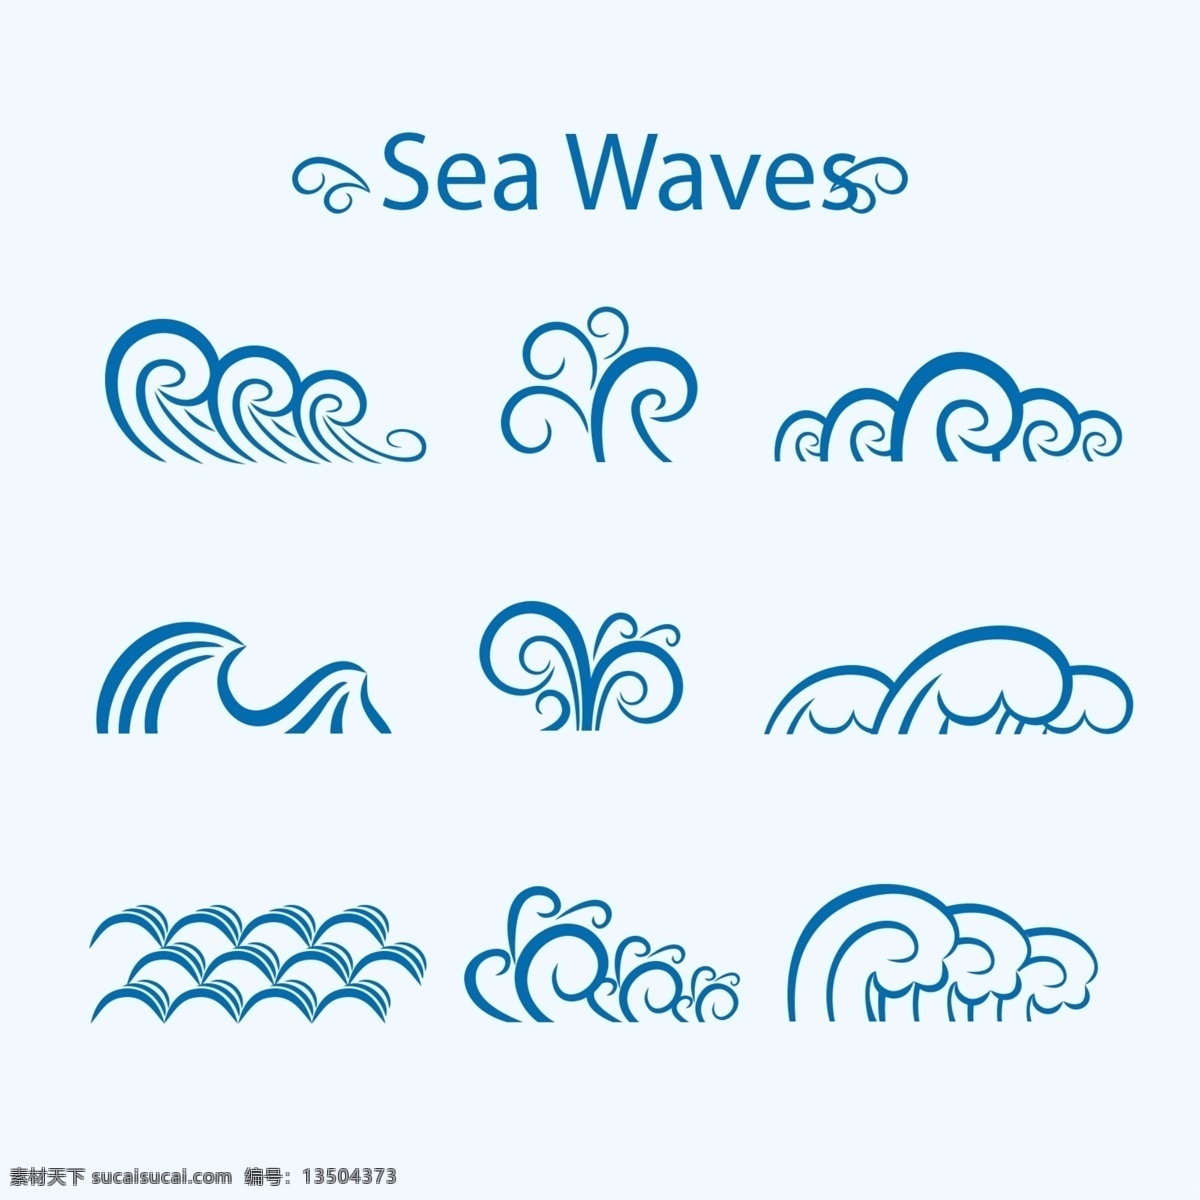 款 蓝色 海浪 矢量 蓝色海浪 设计素材 矢量素材 波浪素材 海浪素材